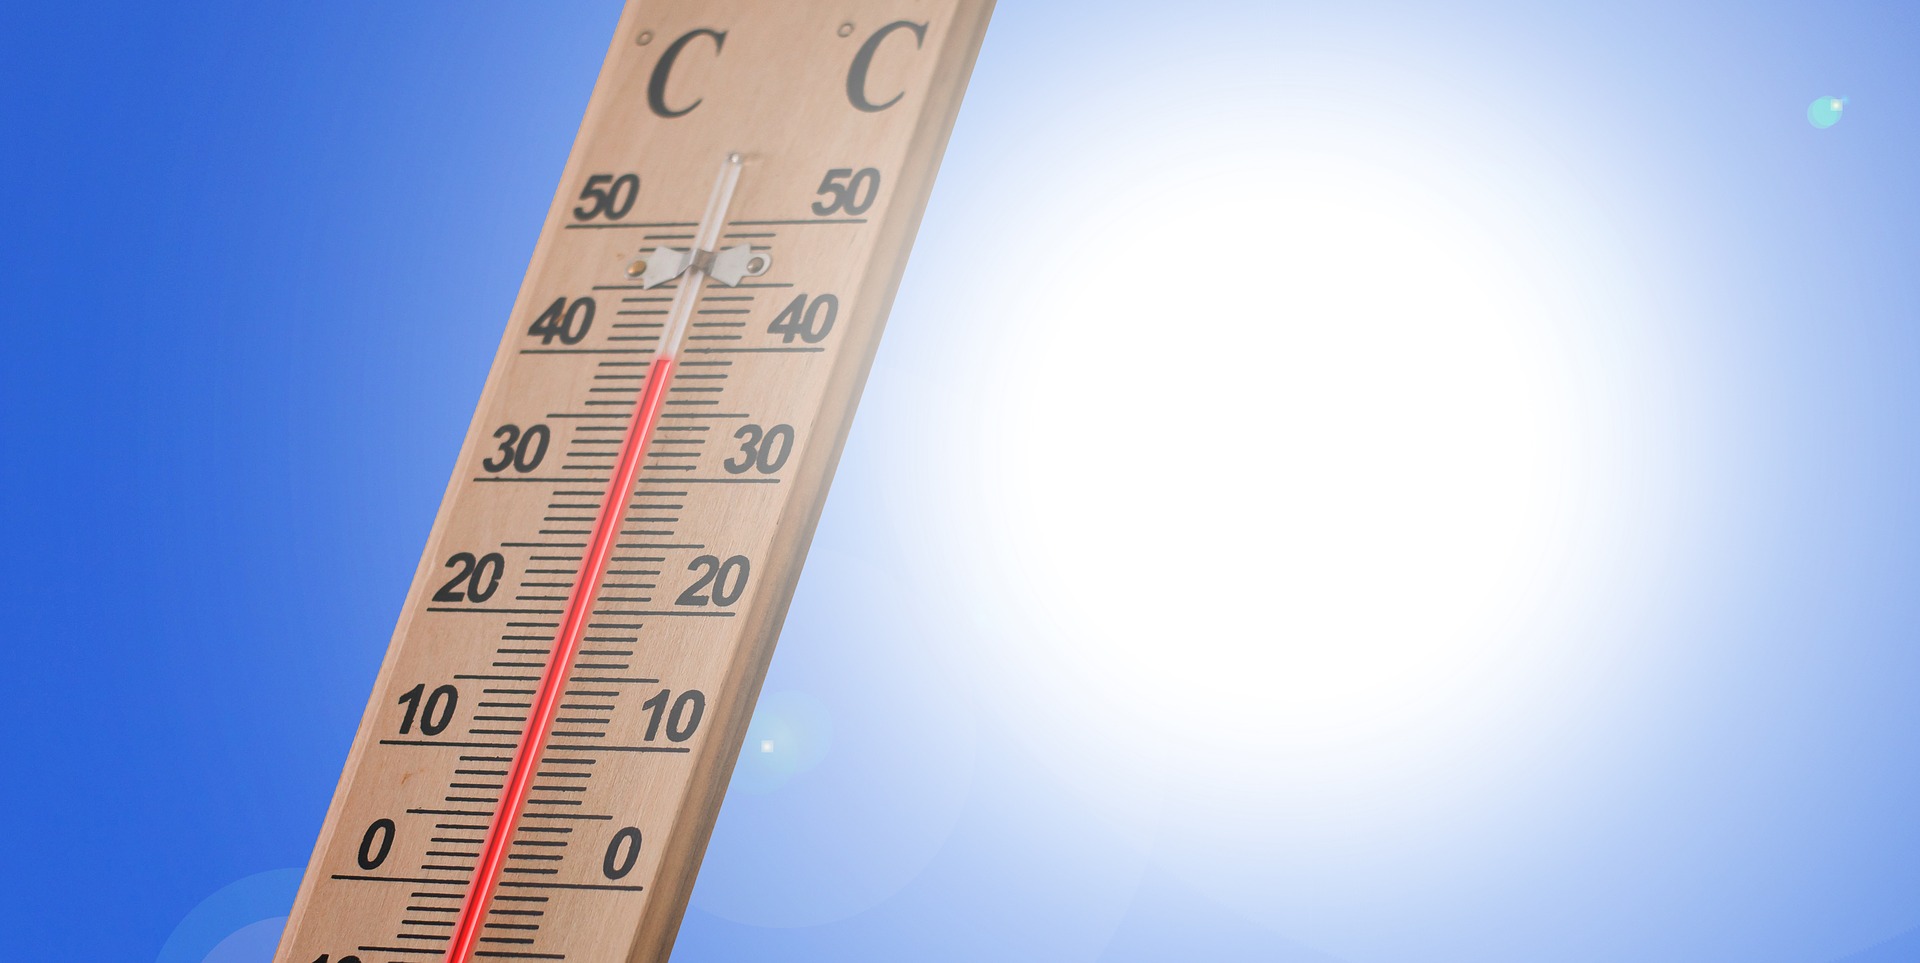 temperature thermometer in the sun